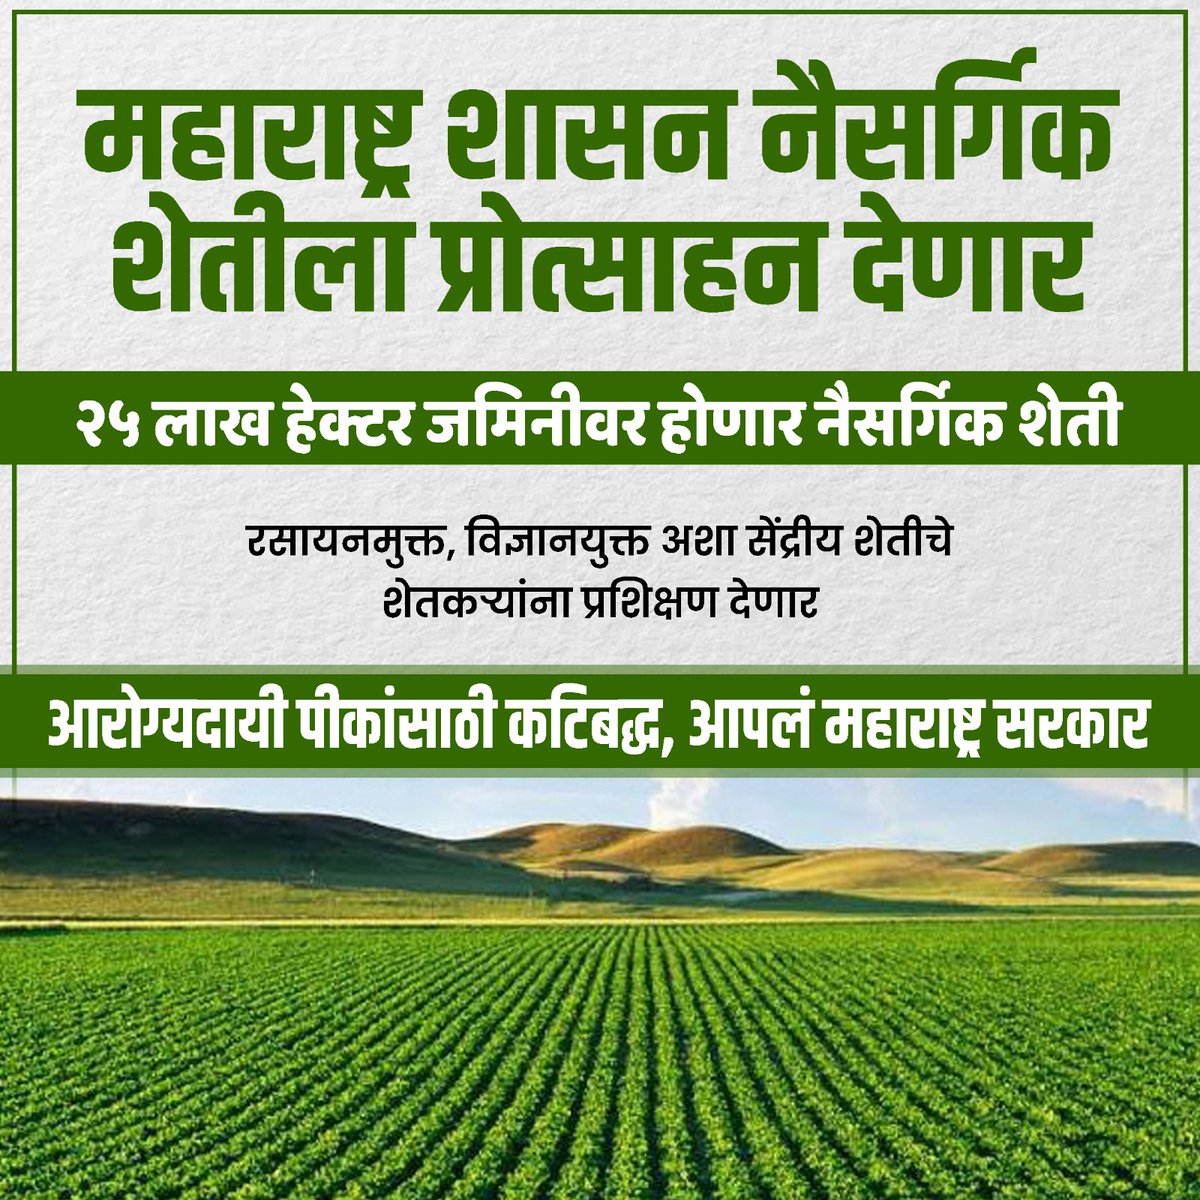 महाराष्ट्र में प्राकृतिक खेती को बढ़ावा देने के लिए सीएम एकनाथ शिंदे को सलाम। 25 लाख हेक्टेयर को रसायन मुक्त खेत में बदलना हमारे पर्यावरण और कृषि क्षेत्र के लिए एक बड़ा बदलाव है।